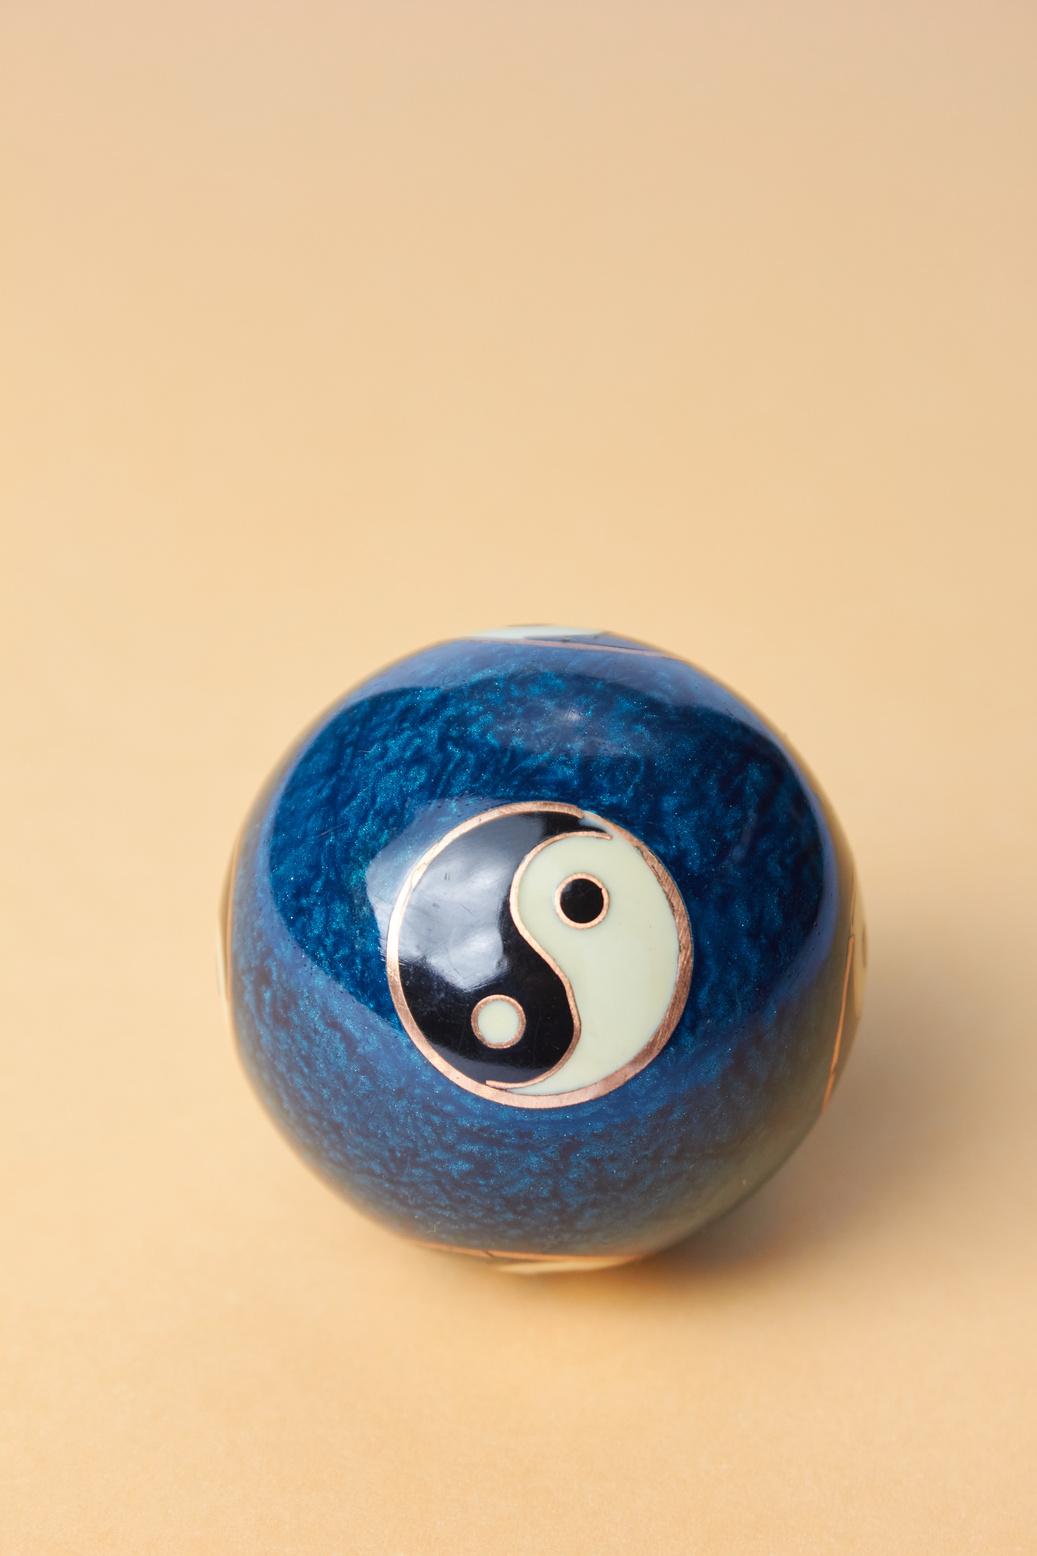 A Chinese Ball Embracing Balance